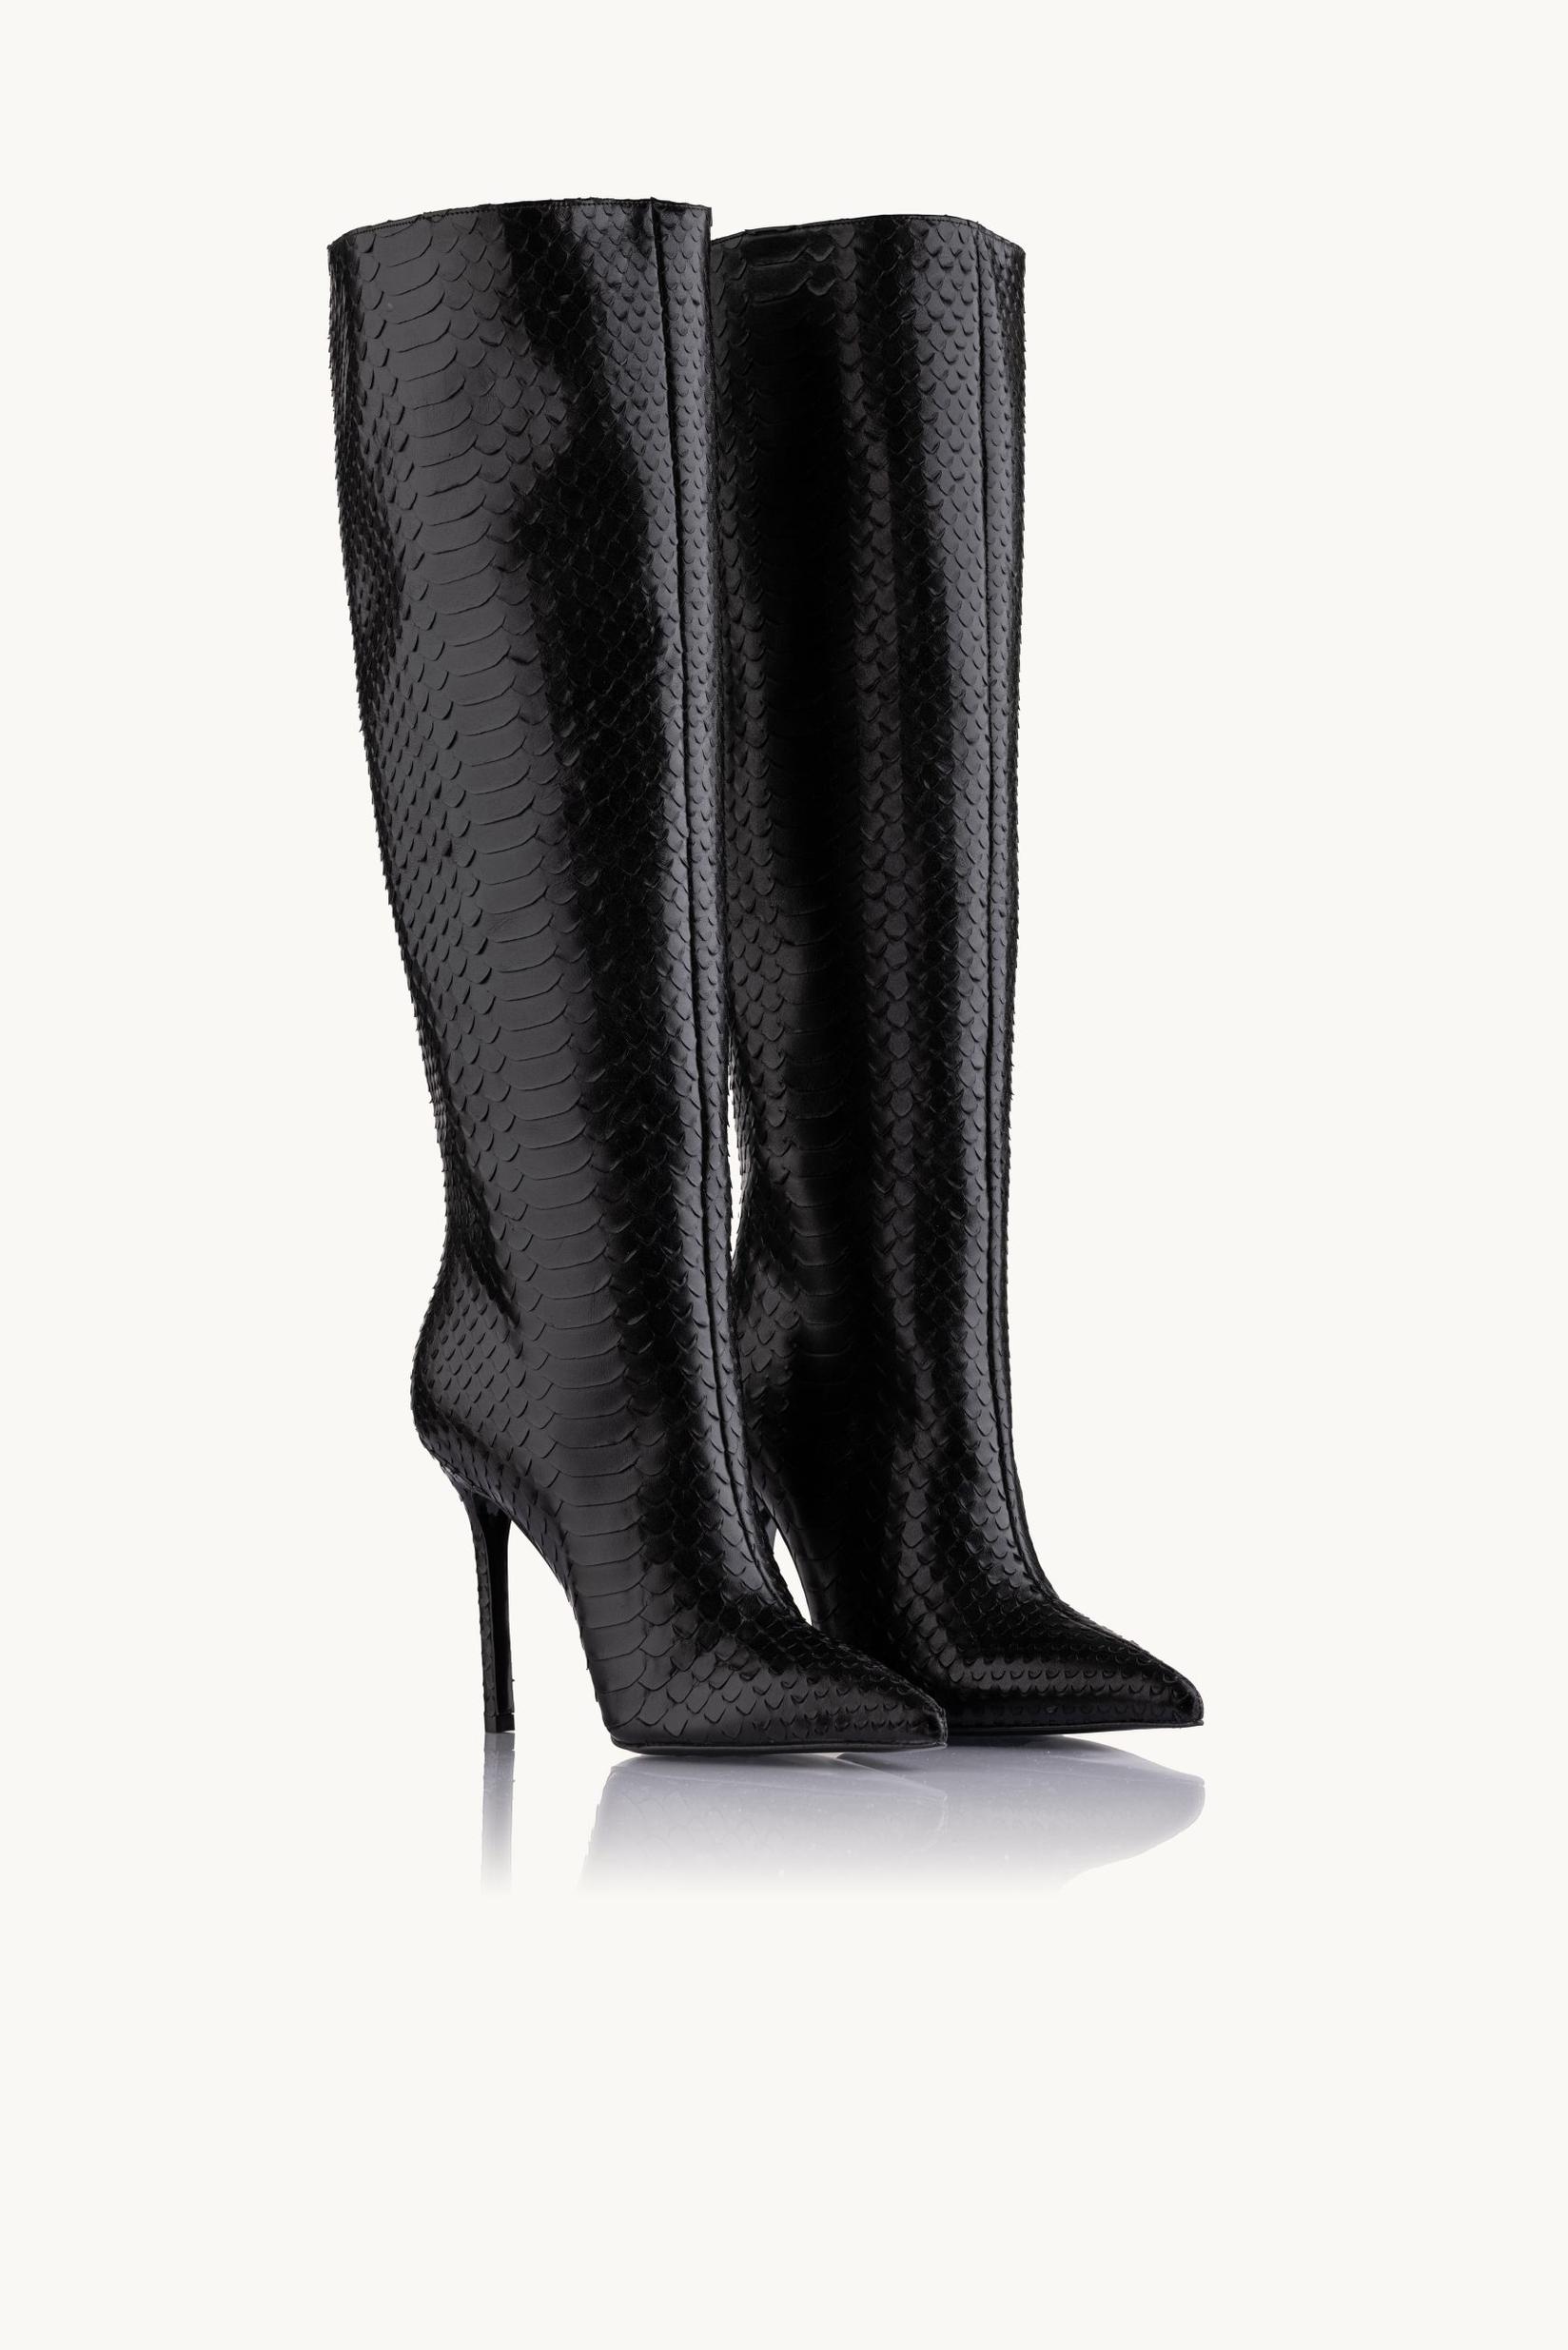 Selected image for NAKA Ženske čizme na štiklu Dark Python crne